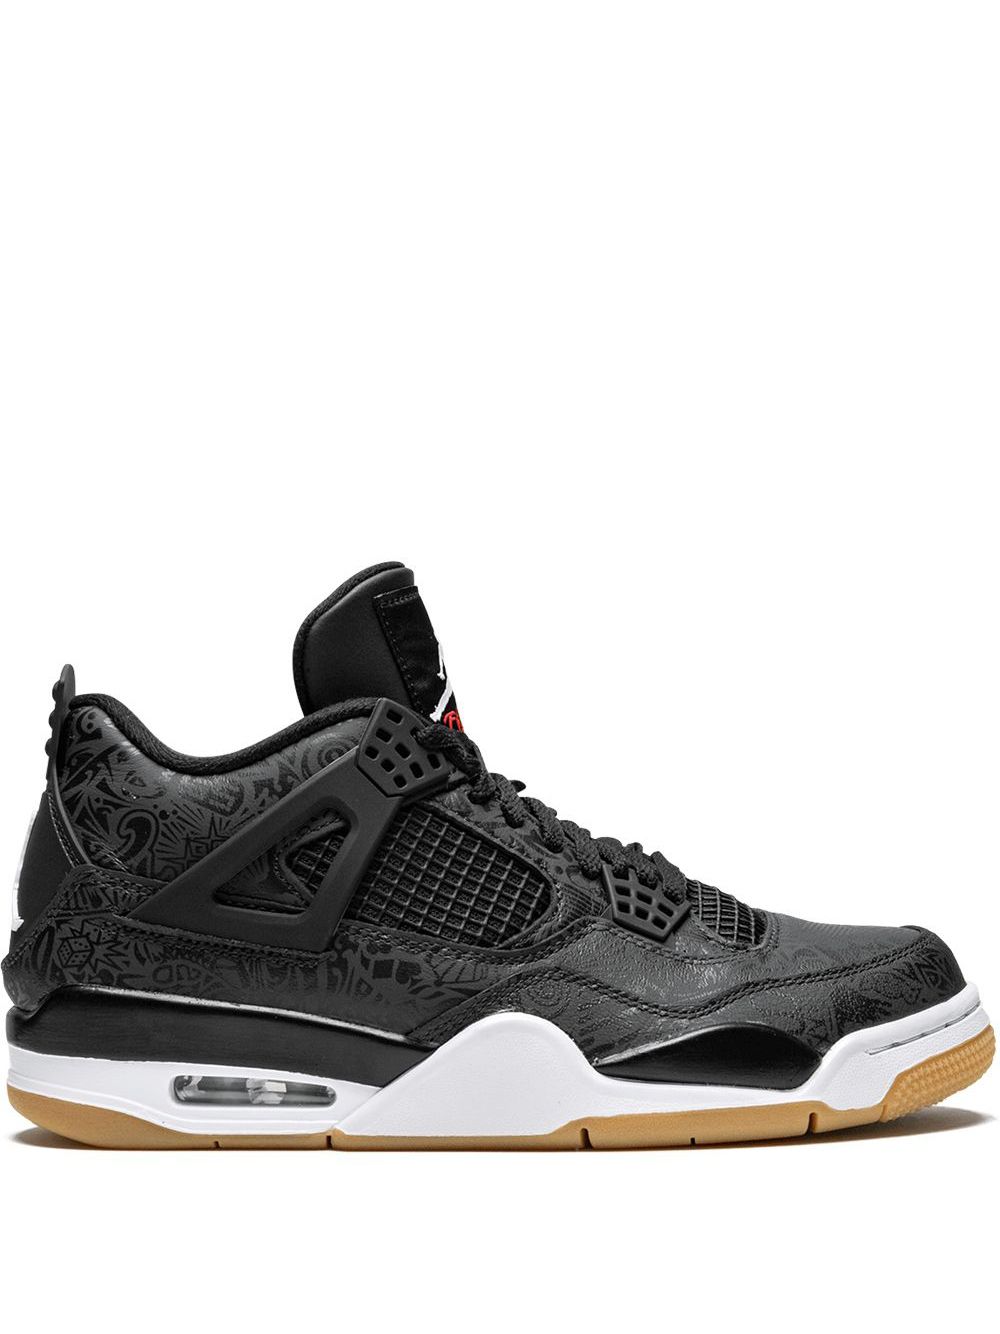 Jordan Air Jordan 4 Retro SE "Black Laser" sneakers